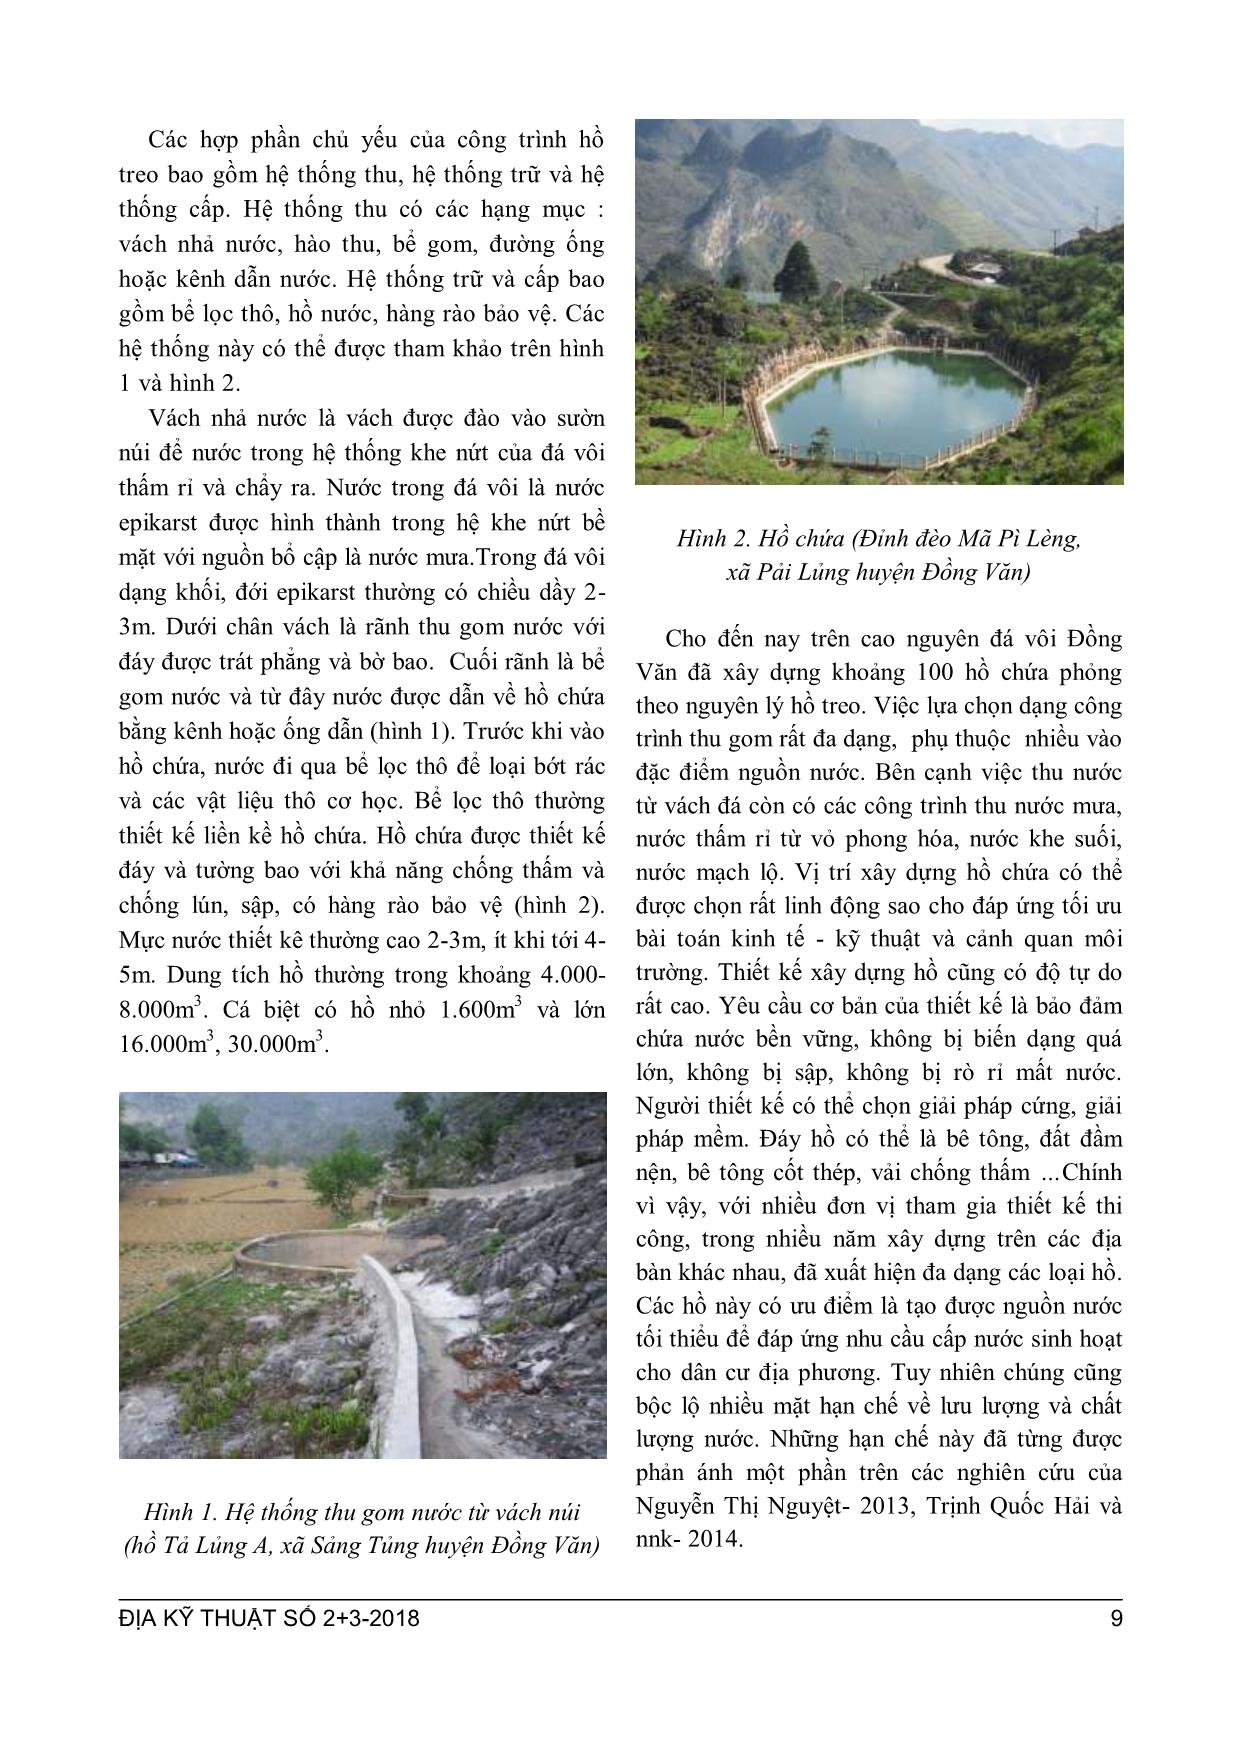 Một số biện pháp nâng cao hiệu quả cấp nước sinh hoạt của hồ treo trang 2